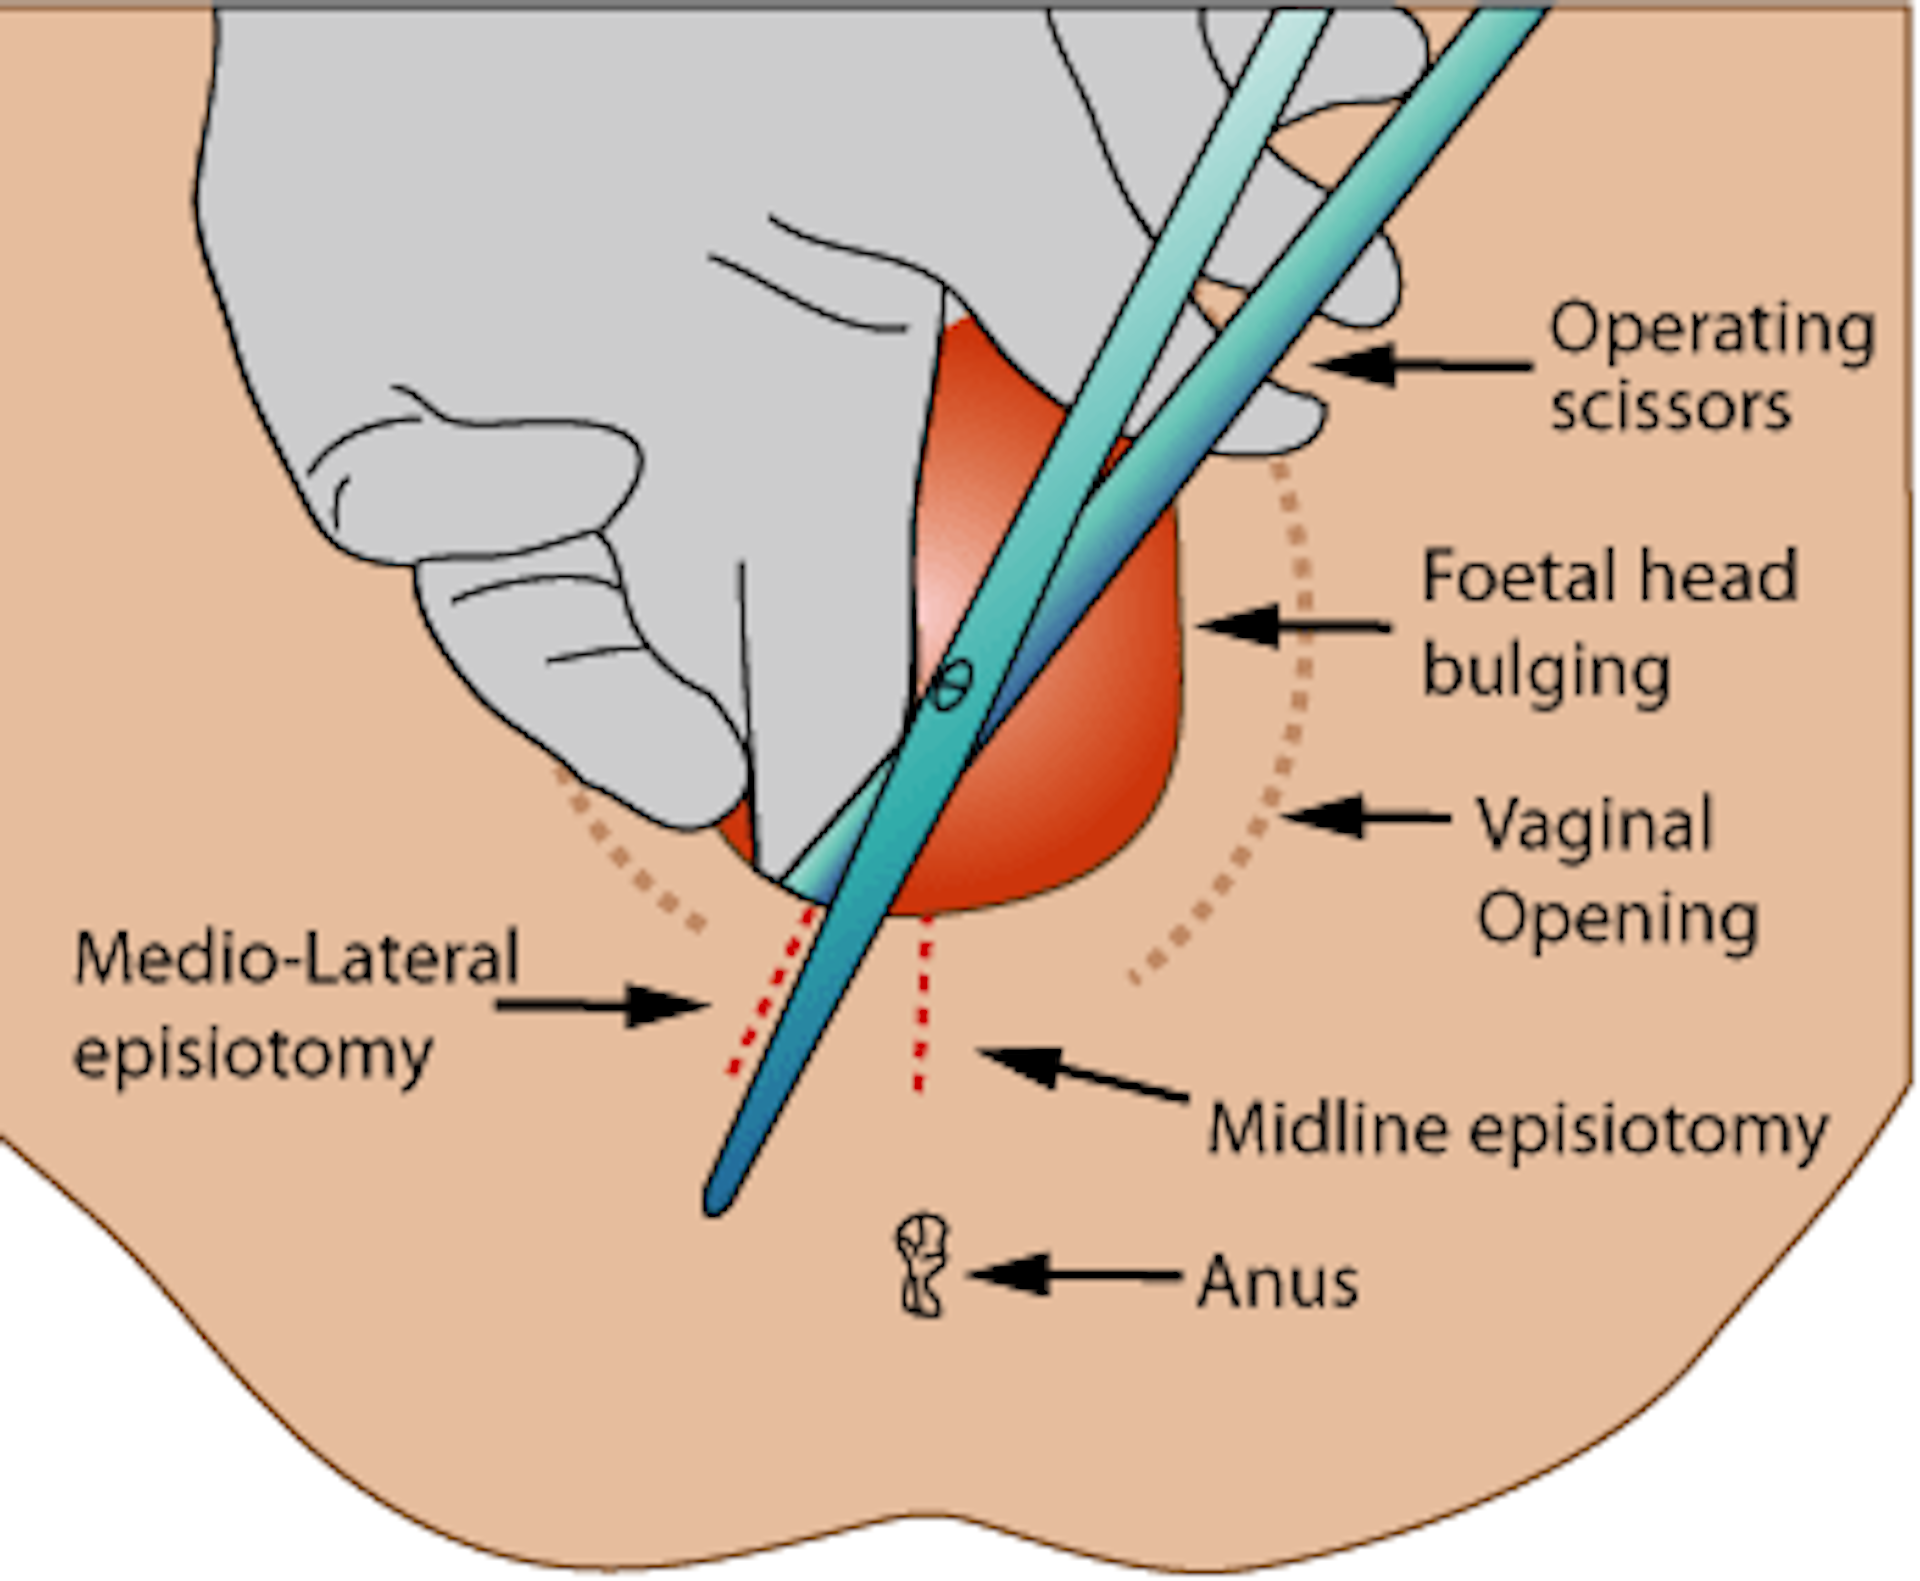 Small Cuts On Vagina